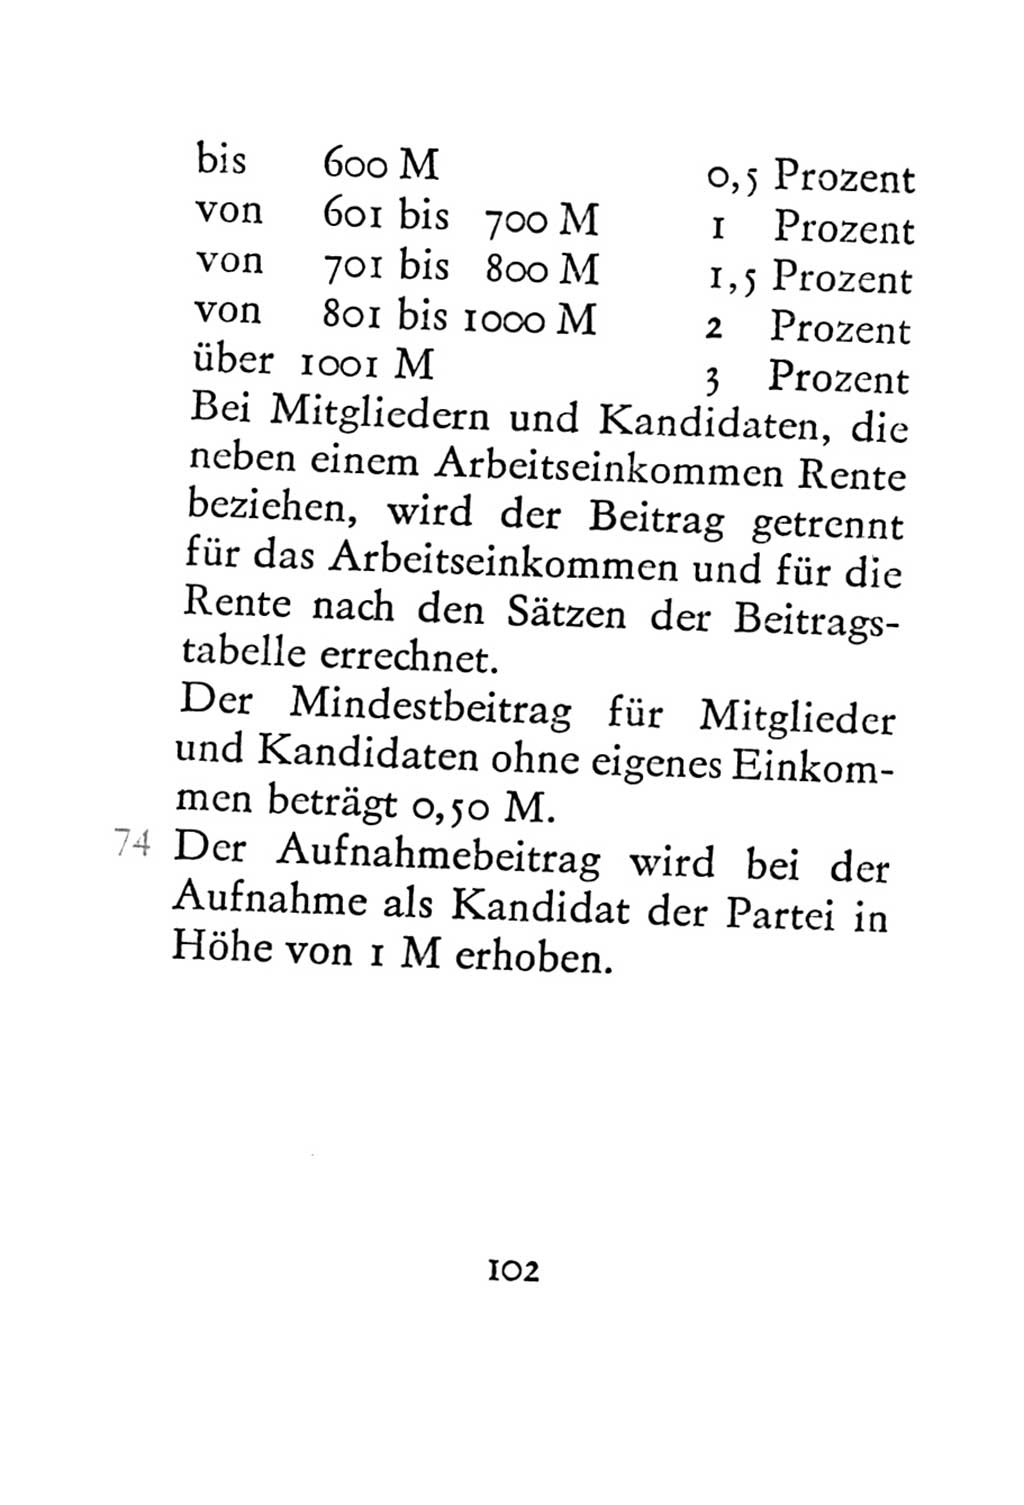 Statut der Sozialistischen Einheitspartei Deutschlands (SED) 1967, Seite 102 (St. SED DDR 1967, S. 102)